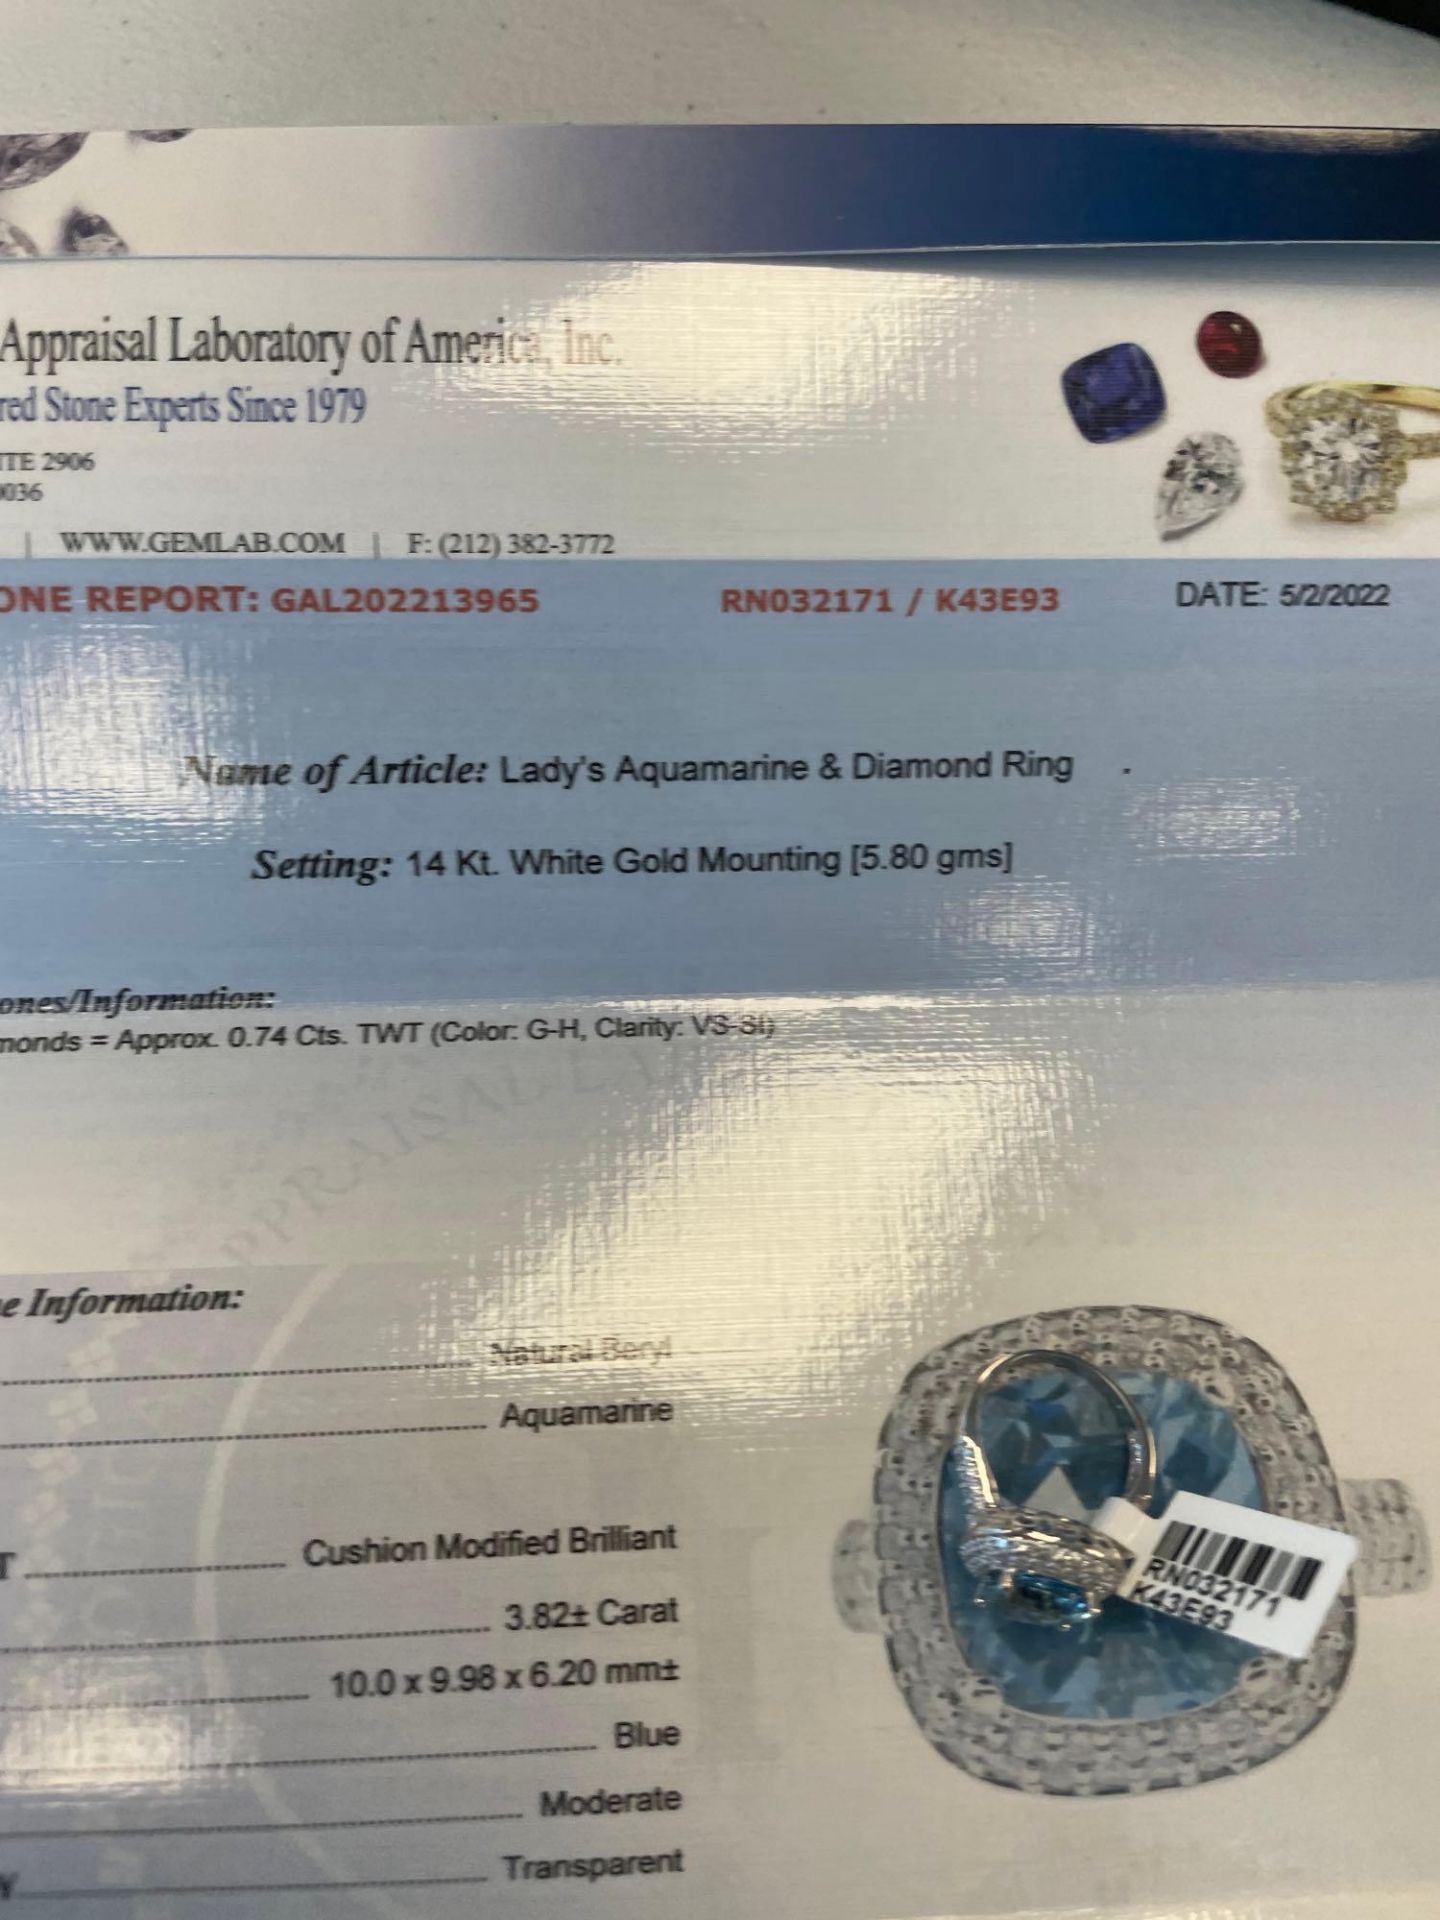 Lady's Aquamarine & Diamond Ring 14kt White Gold Mounting - Image 7 of 7